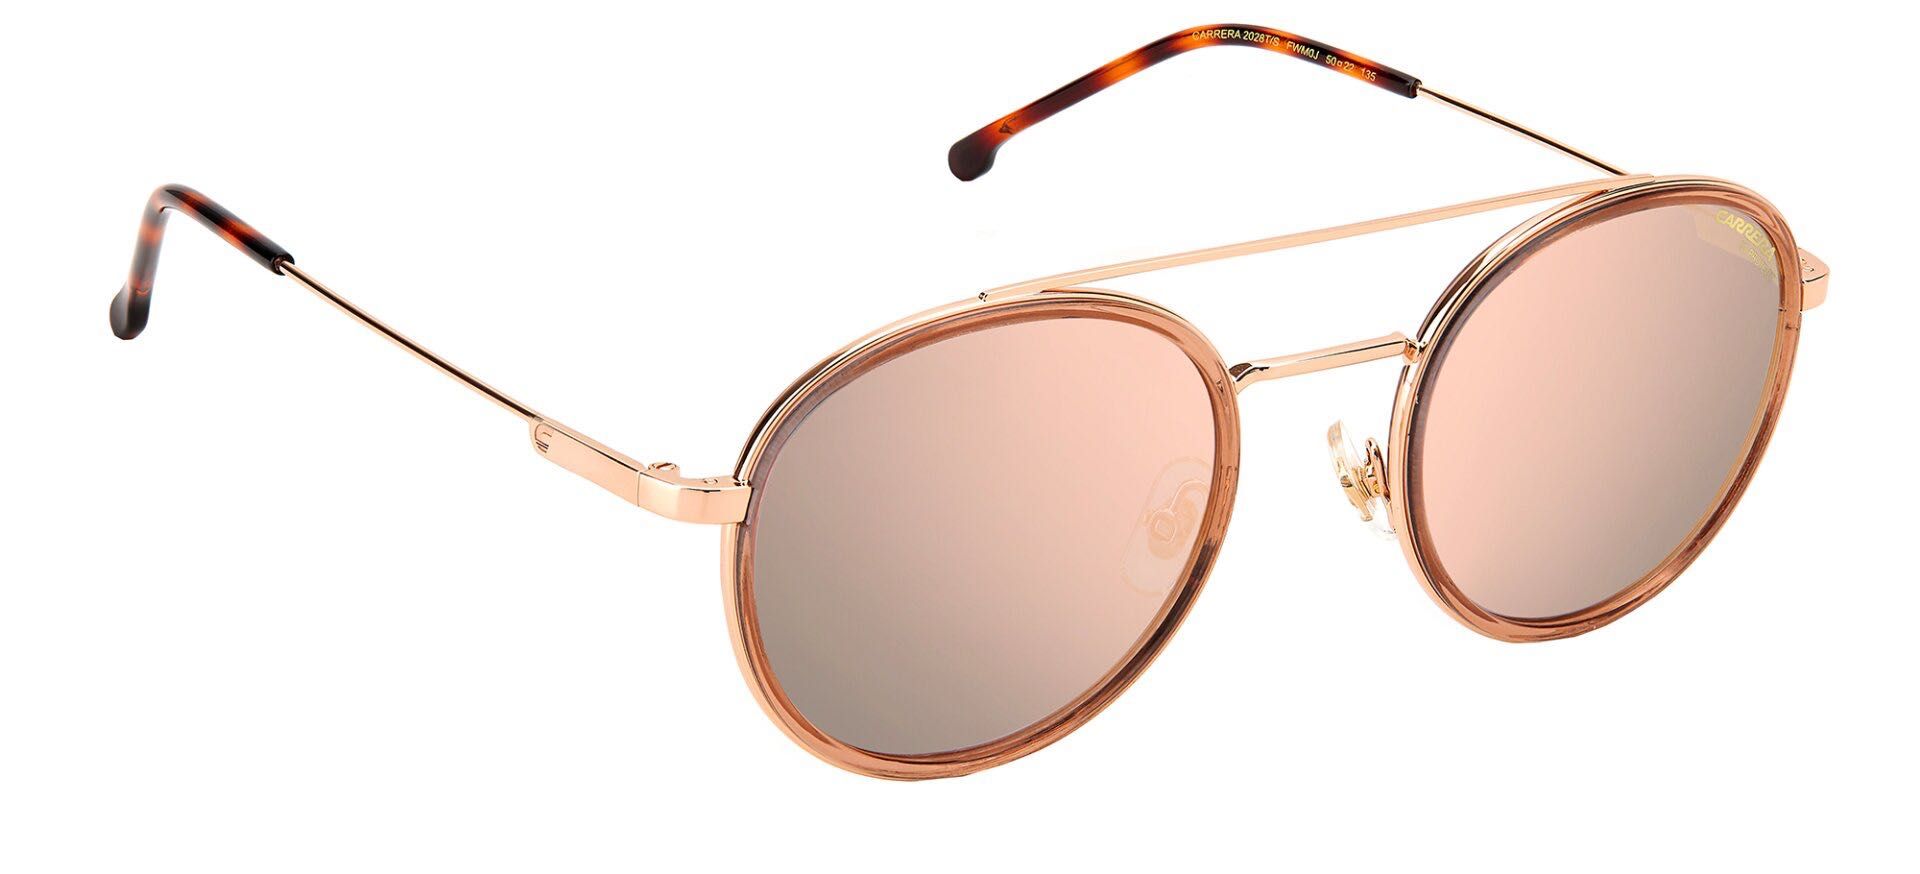 Дамски слънчеви очила Carrera розово злато